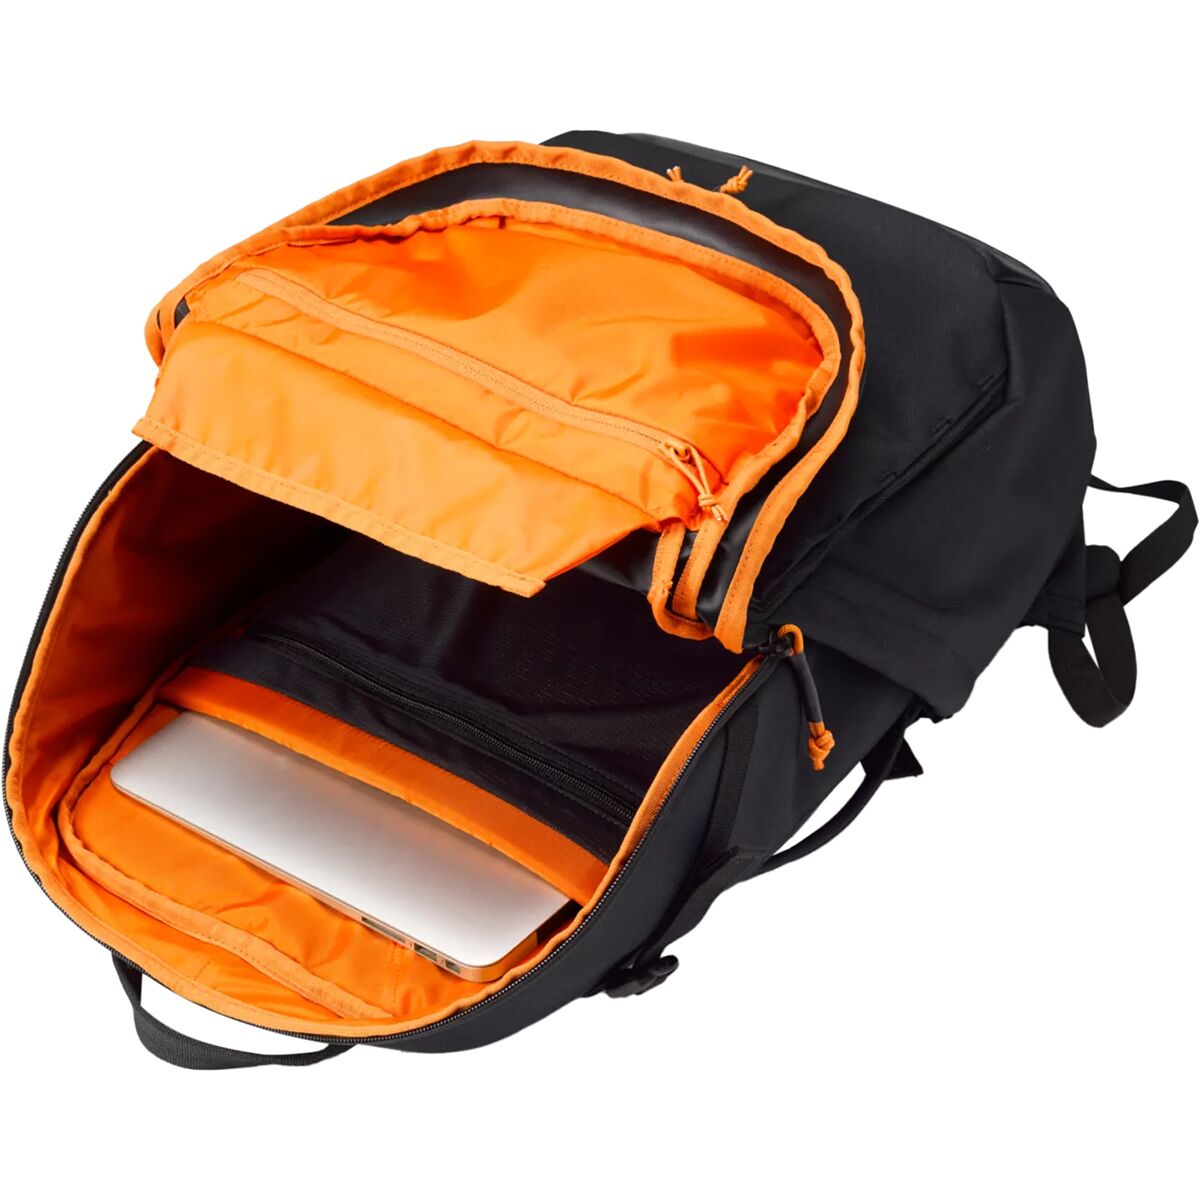 Orvis Trekkage LT Adventure 27L Backpack - Travel